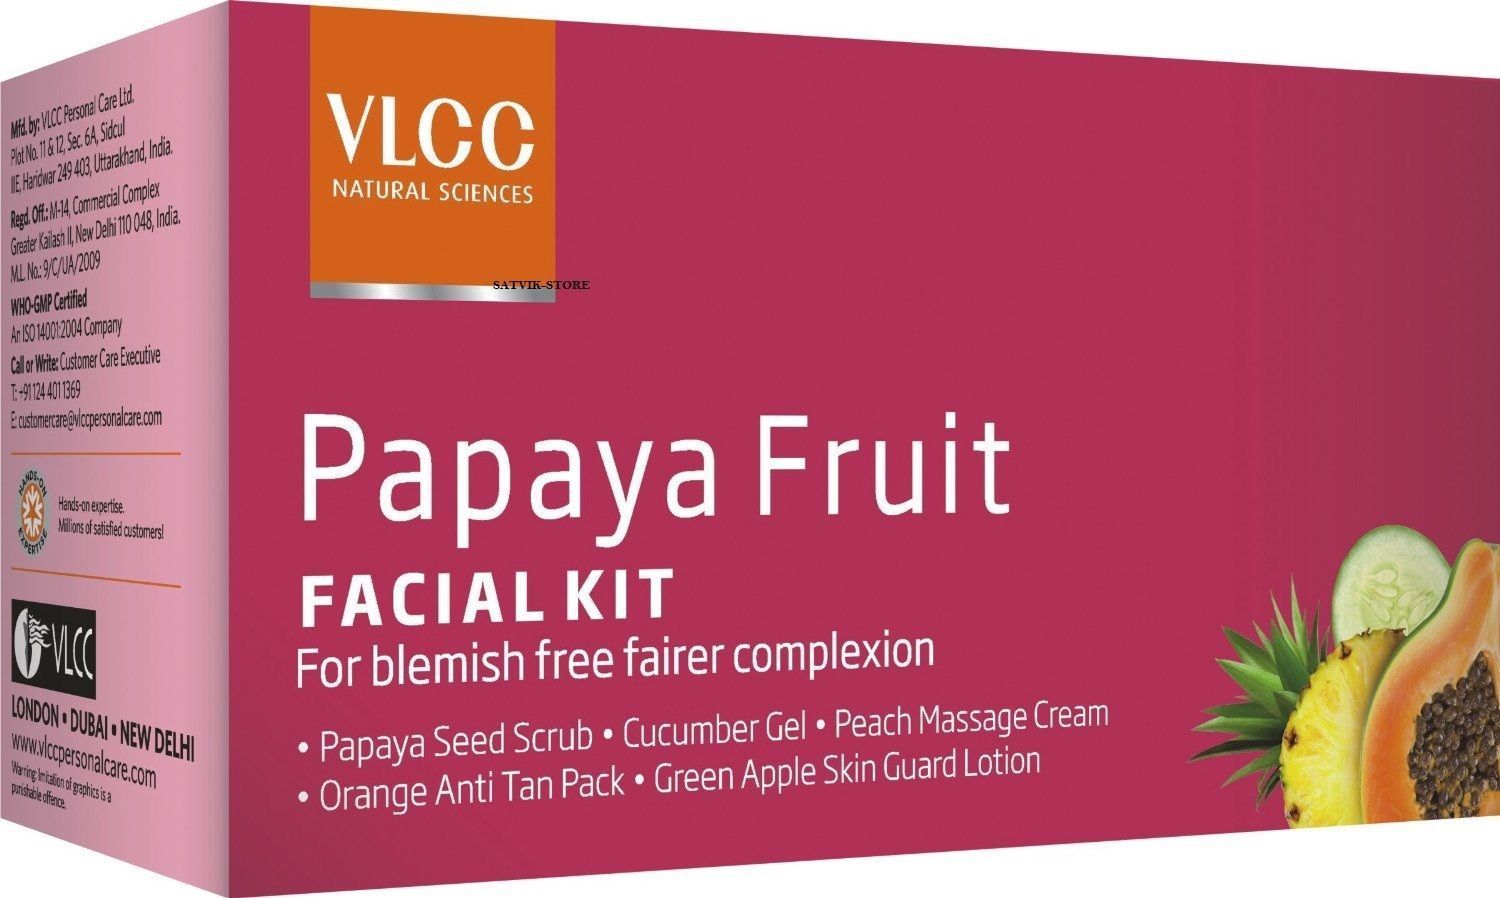 buy VLCC Payaya Fruit Facial Kit in UK & USA